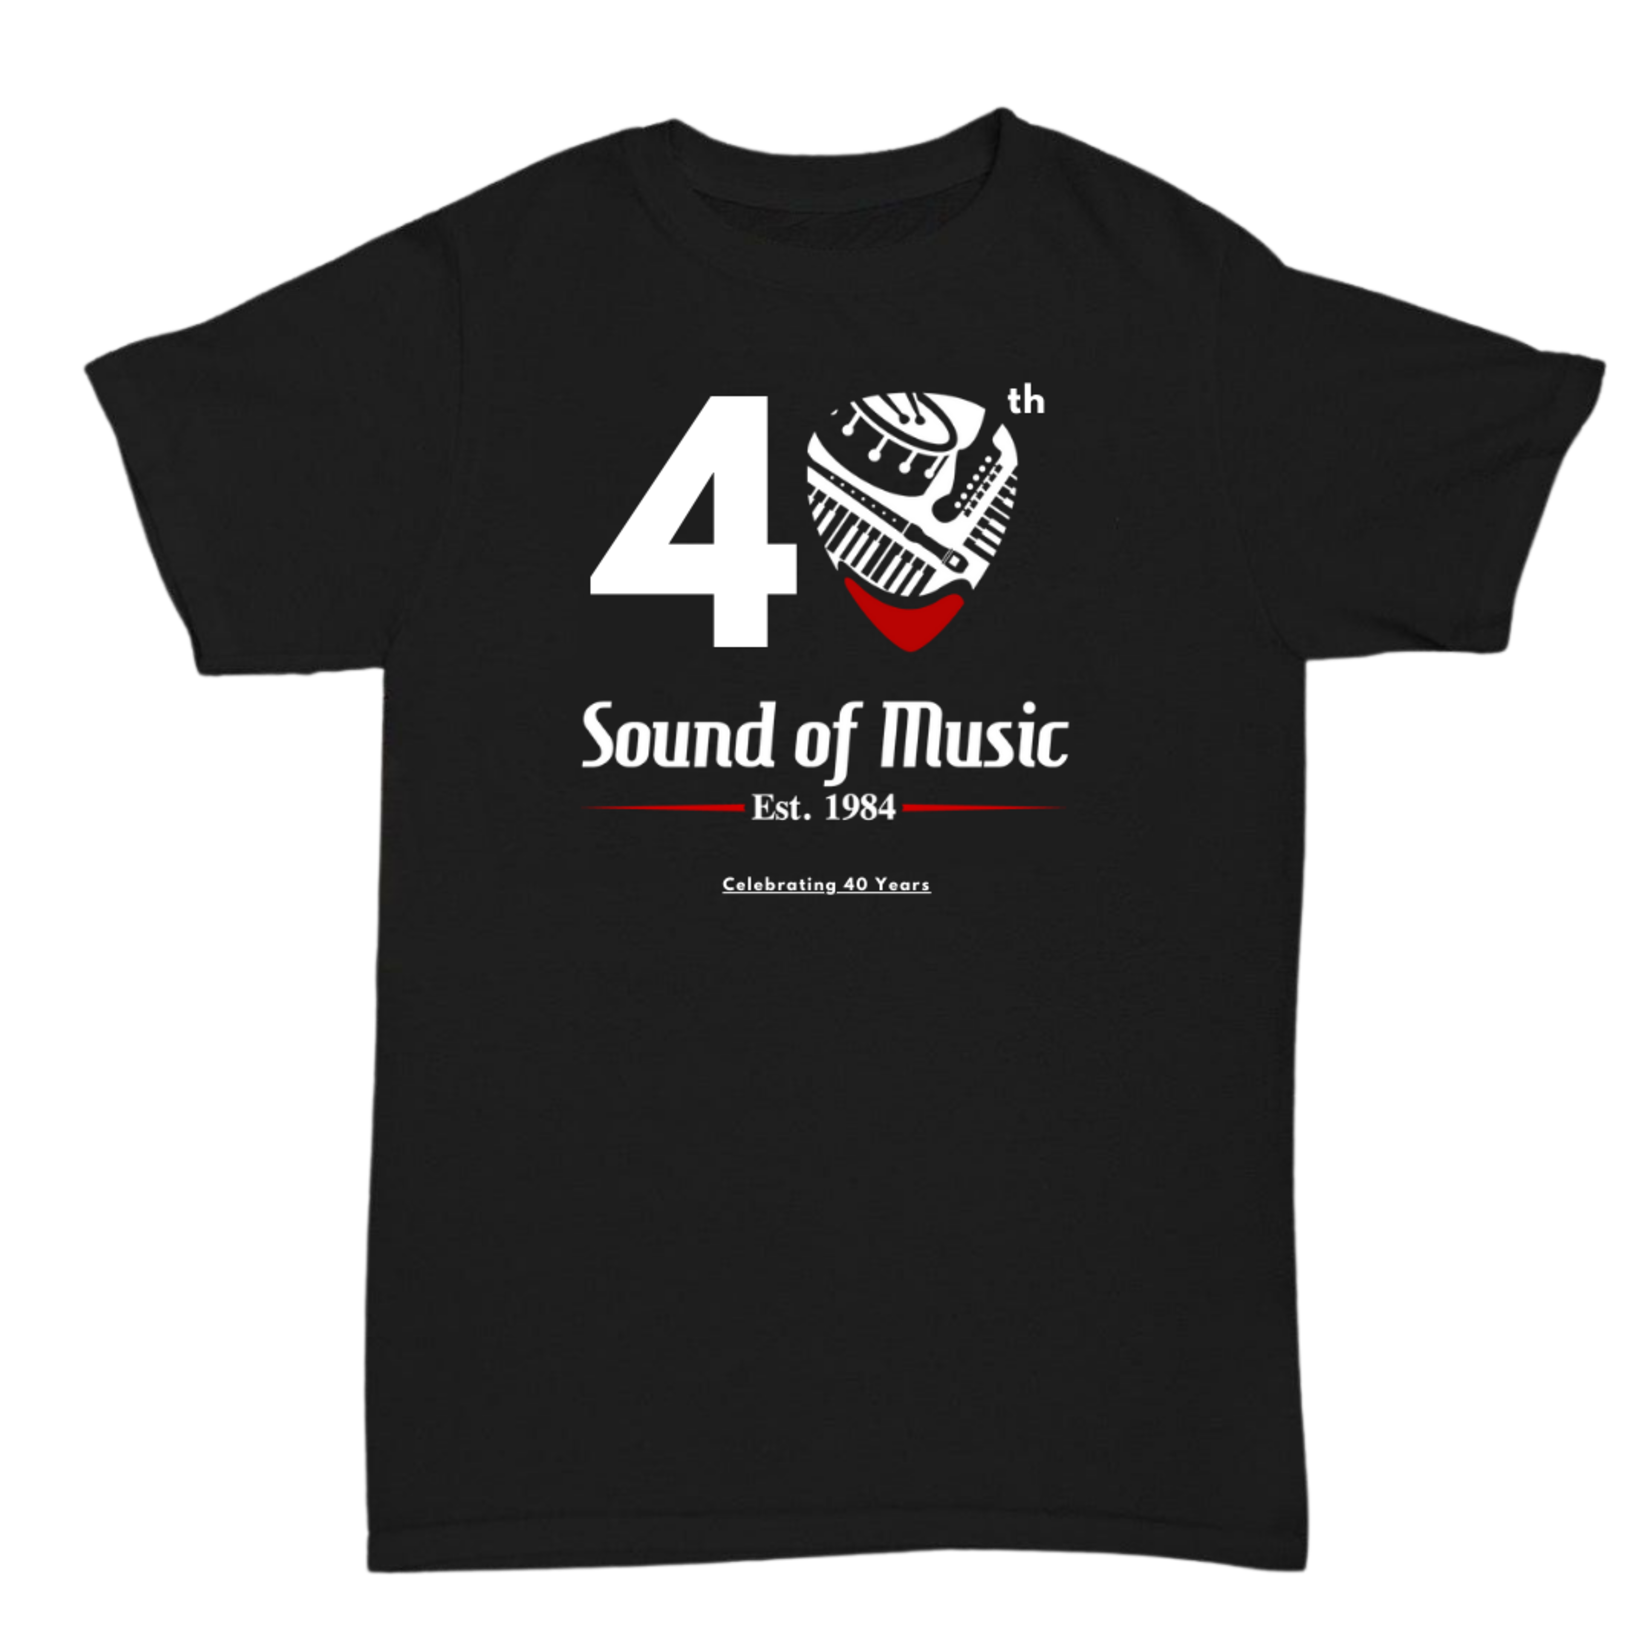 Sound of Music 40th Anniversary Shirt - XXL